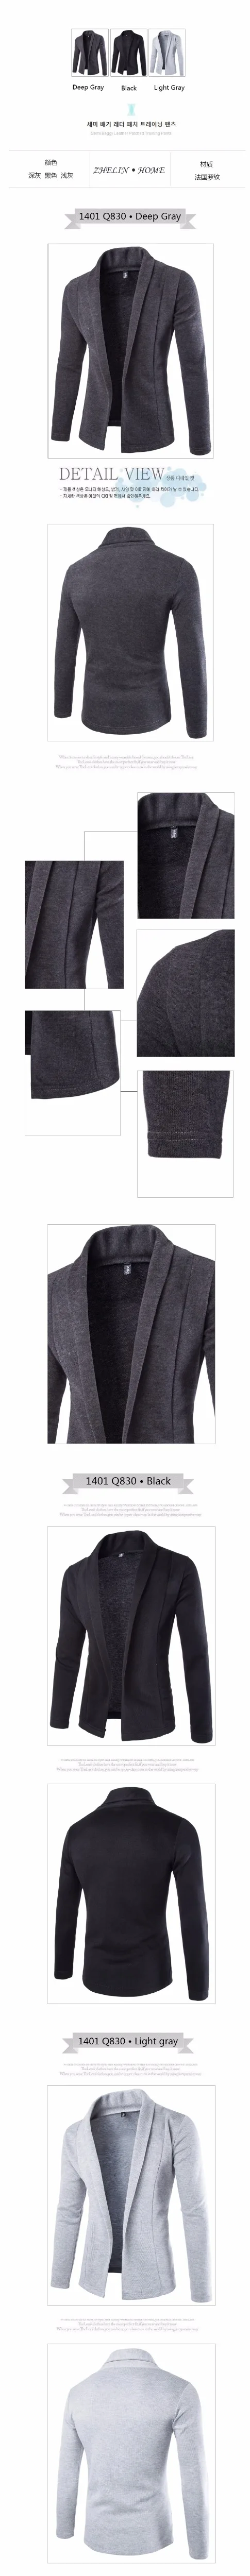 Для мужчин s кардиган свитер 2019 осенью новый внешней торговли прилив Трикотажный кардиган свитер Для мужчин пальто мода Повседневное